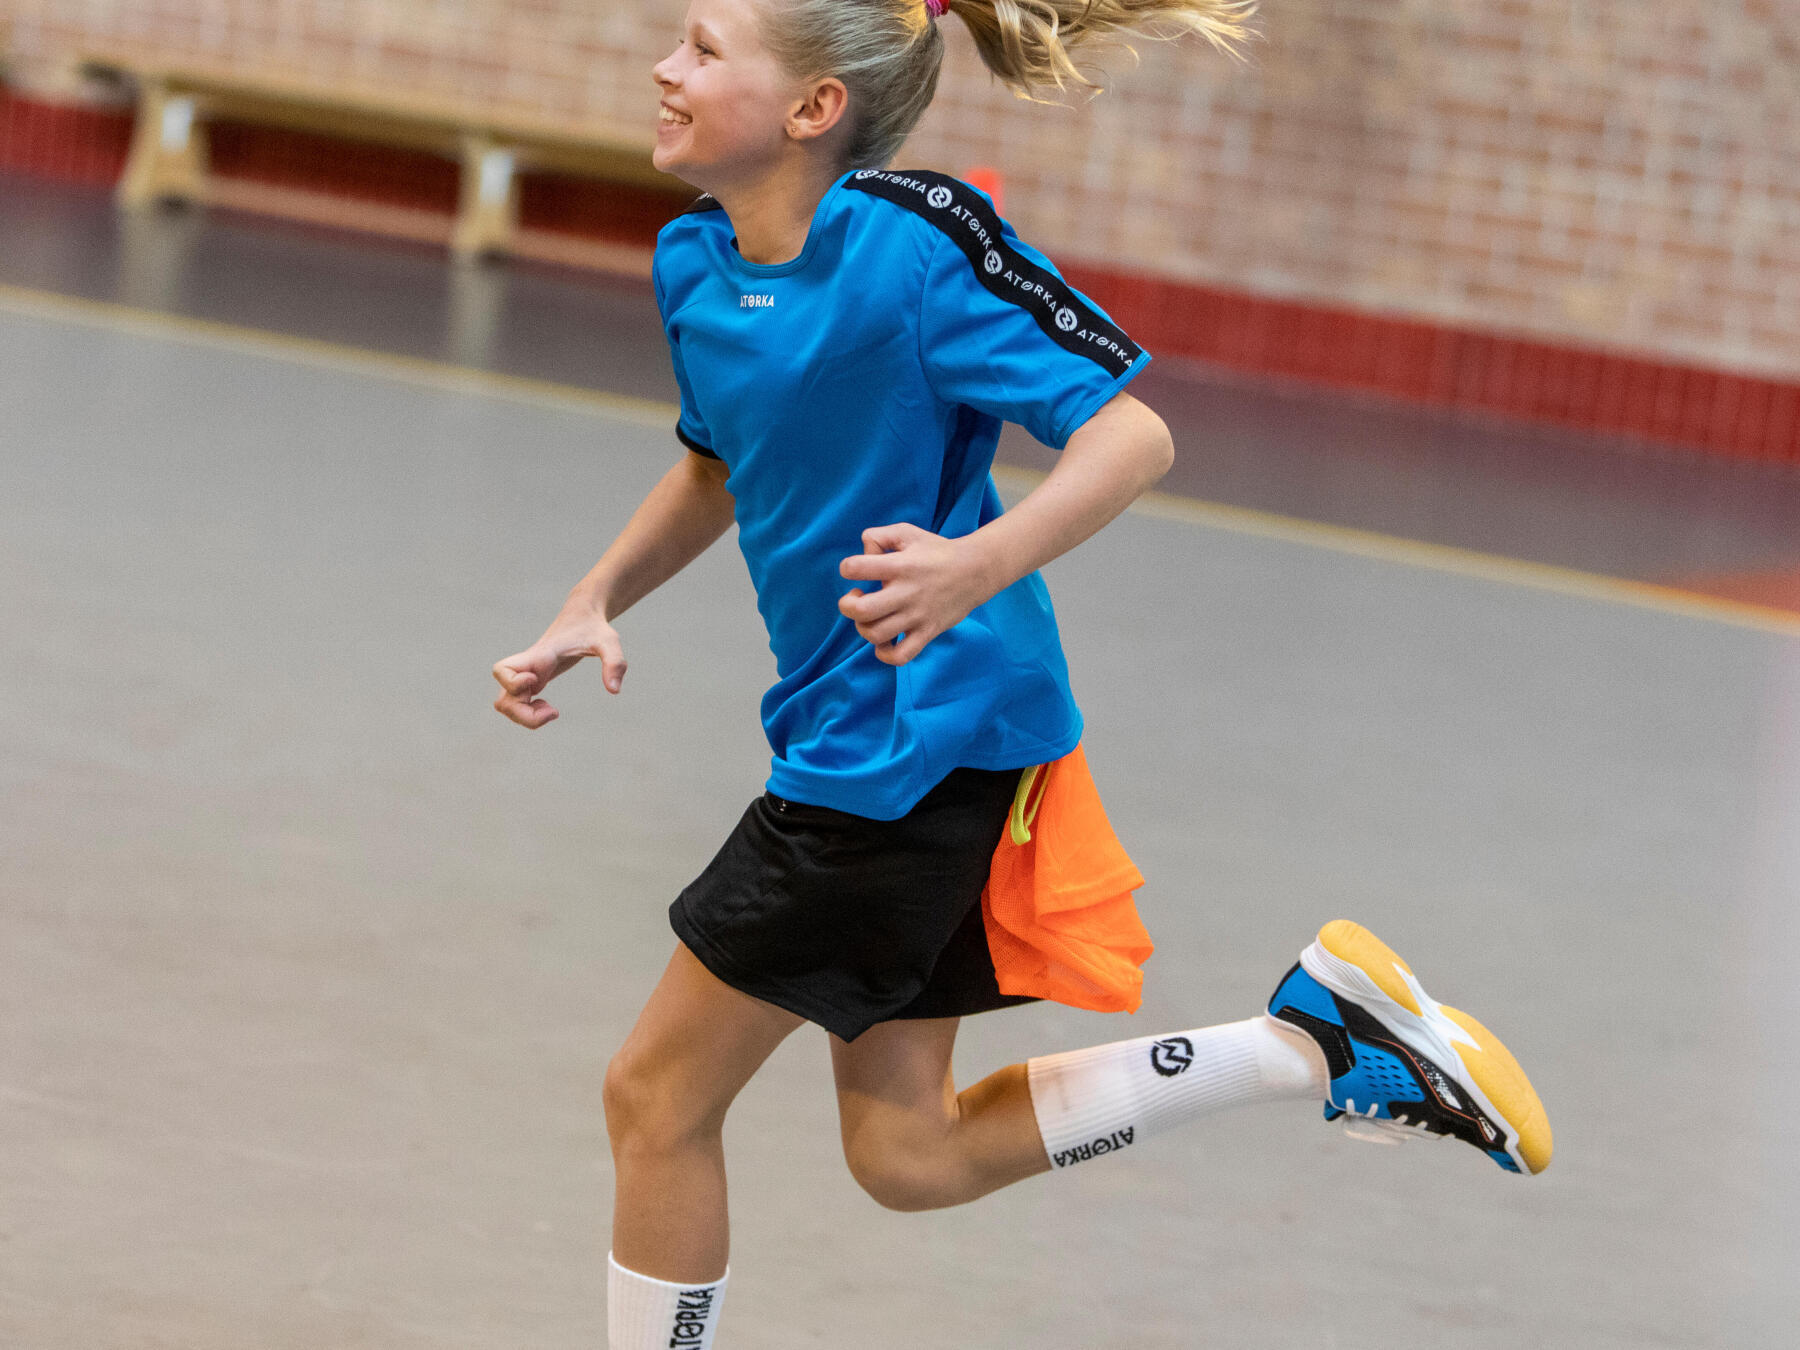 Pourquoi les enfants aiment tant le handball ?